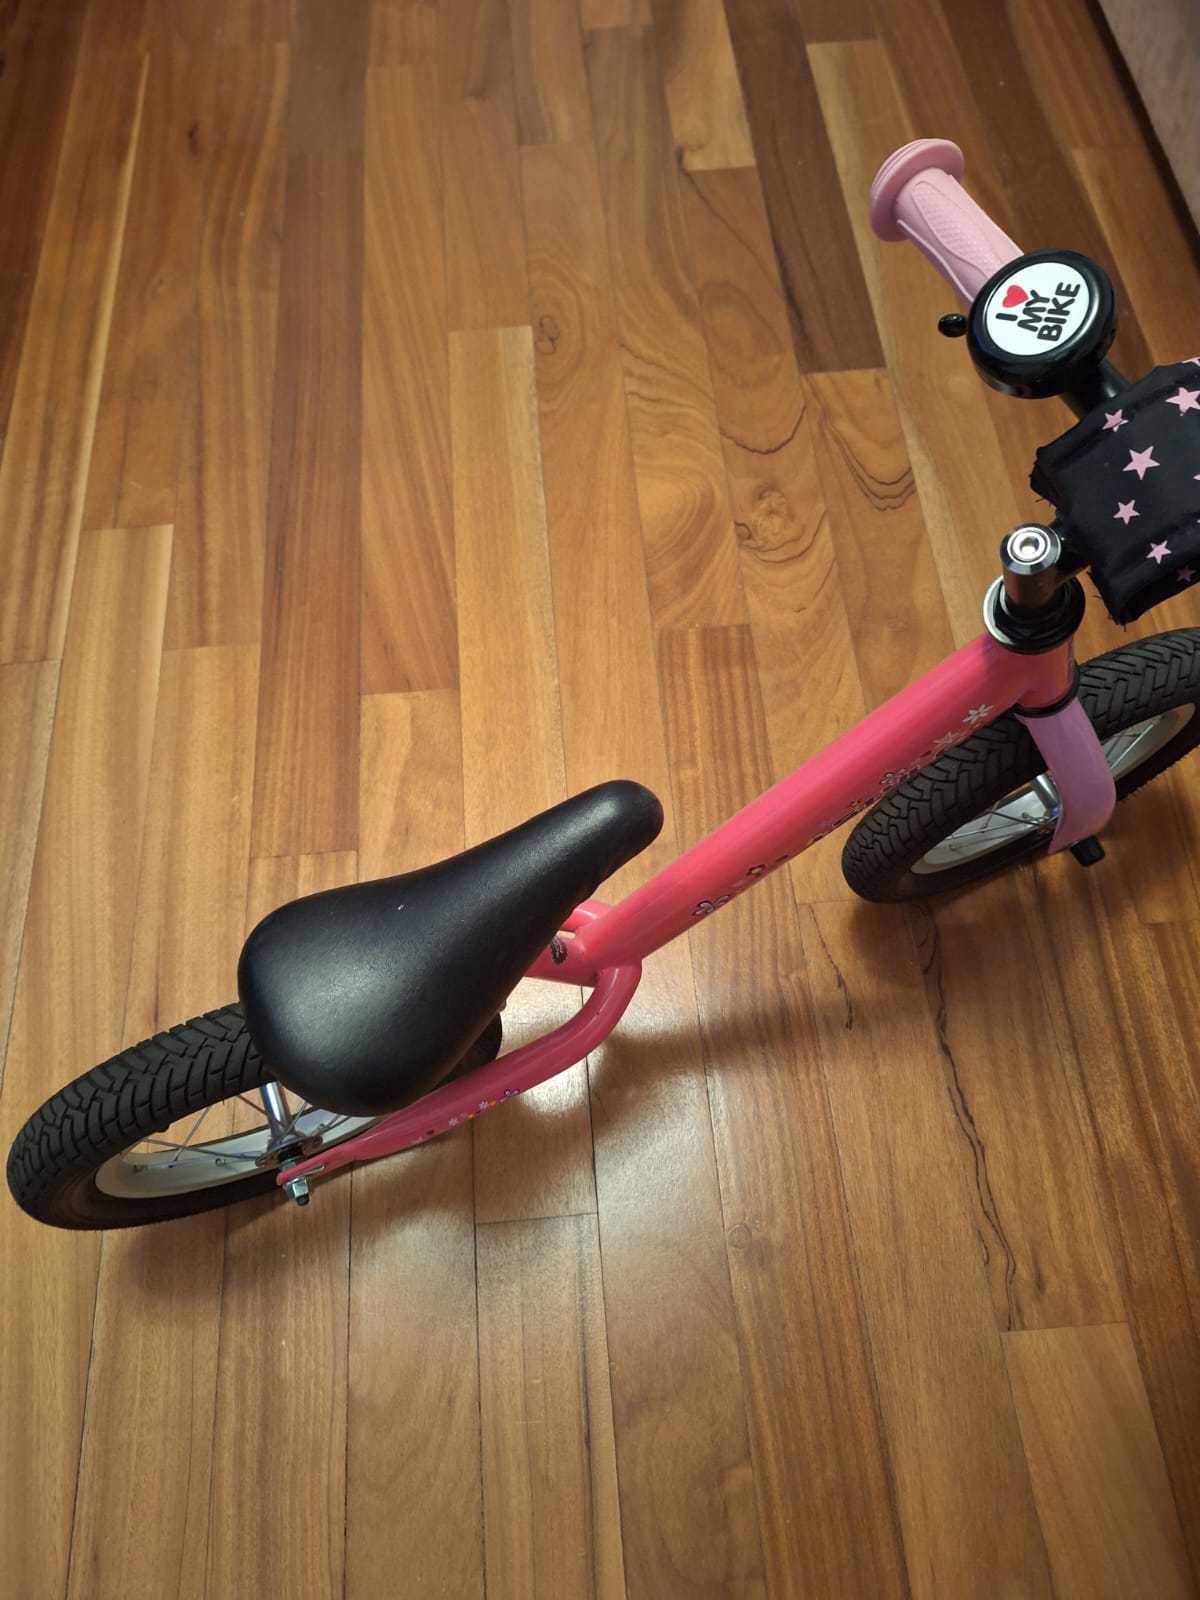 Balance bike copii